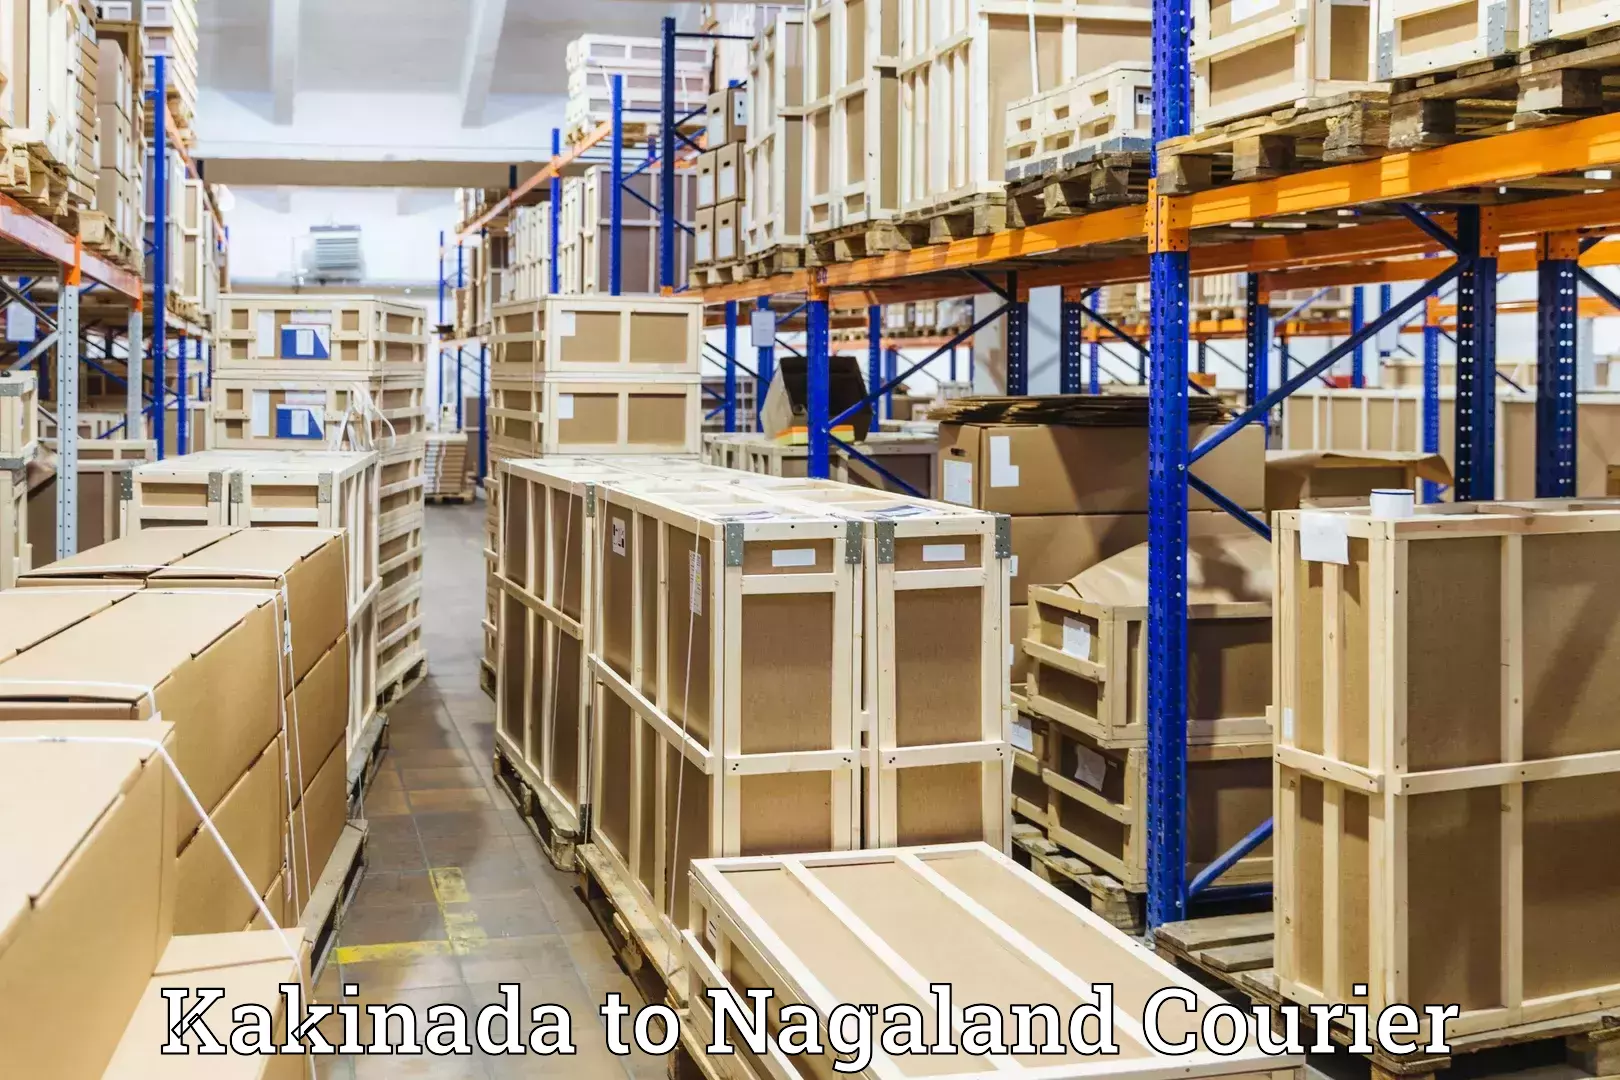 Luggage transport consultancy Kakinada to Nagaland